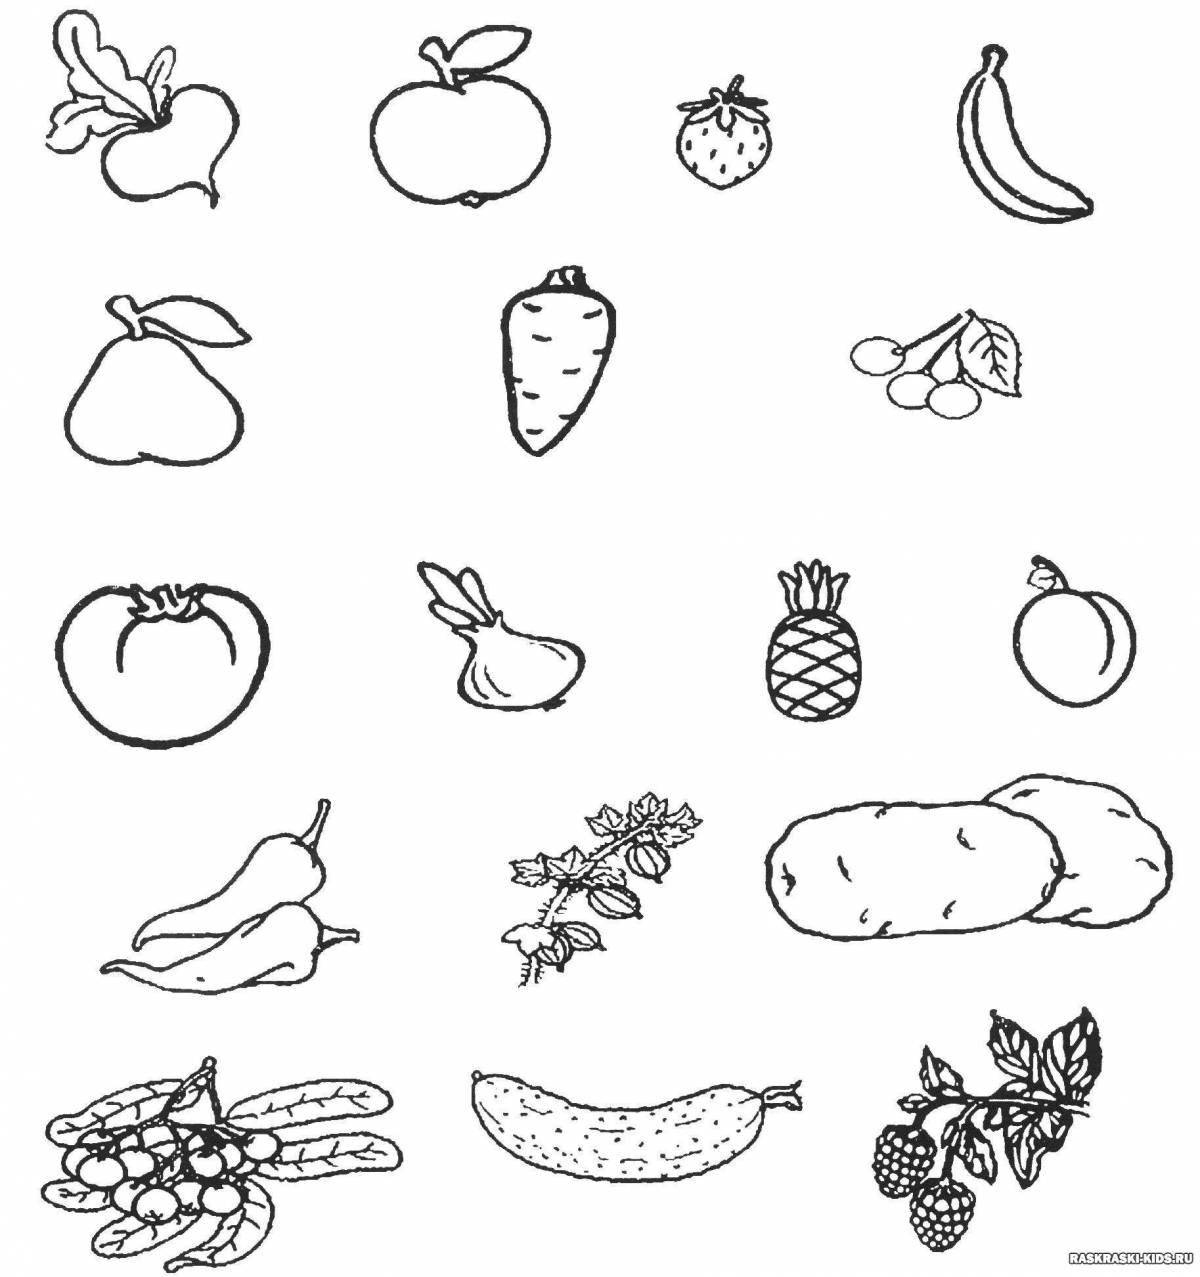 Увлекательная раскраска овощей для детей 5-6 лет